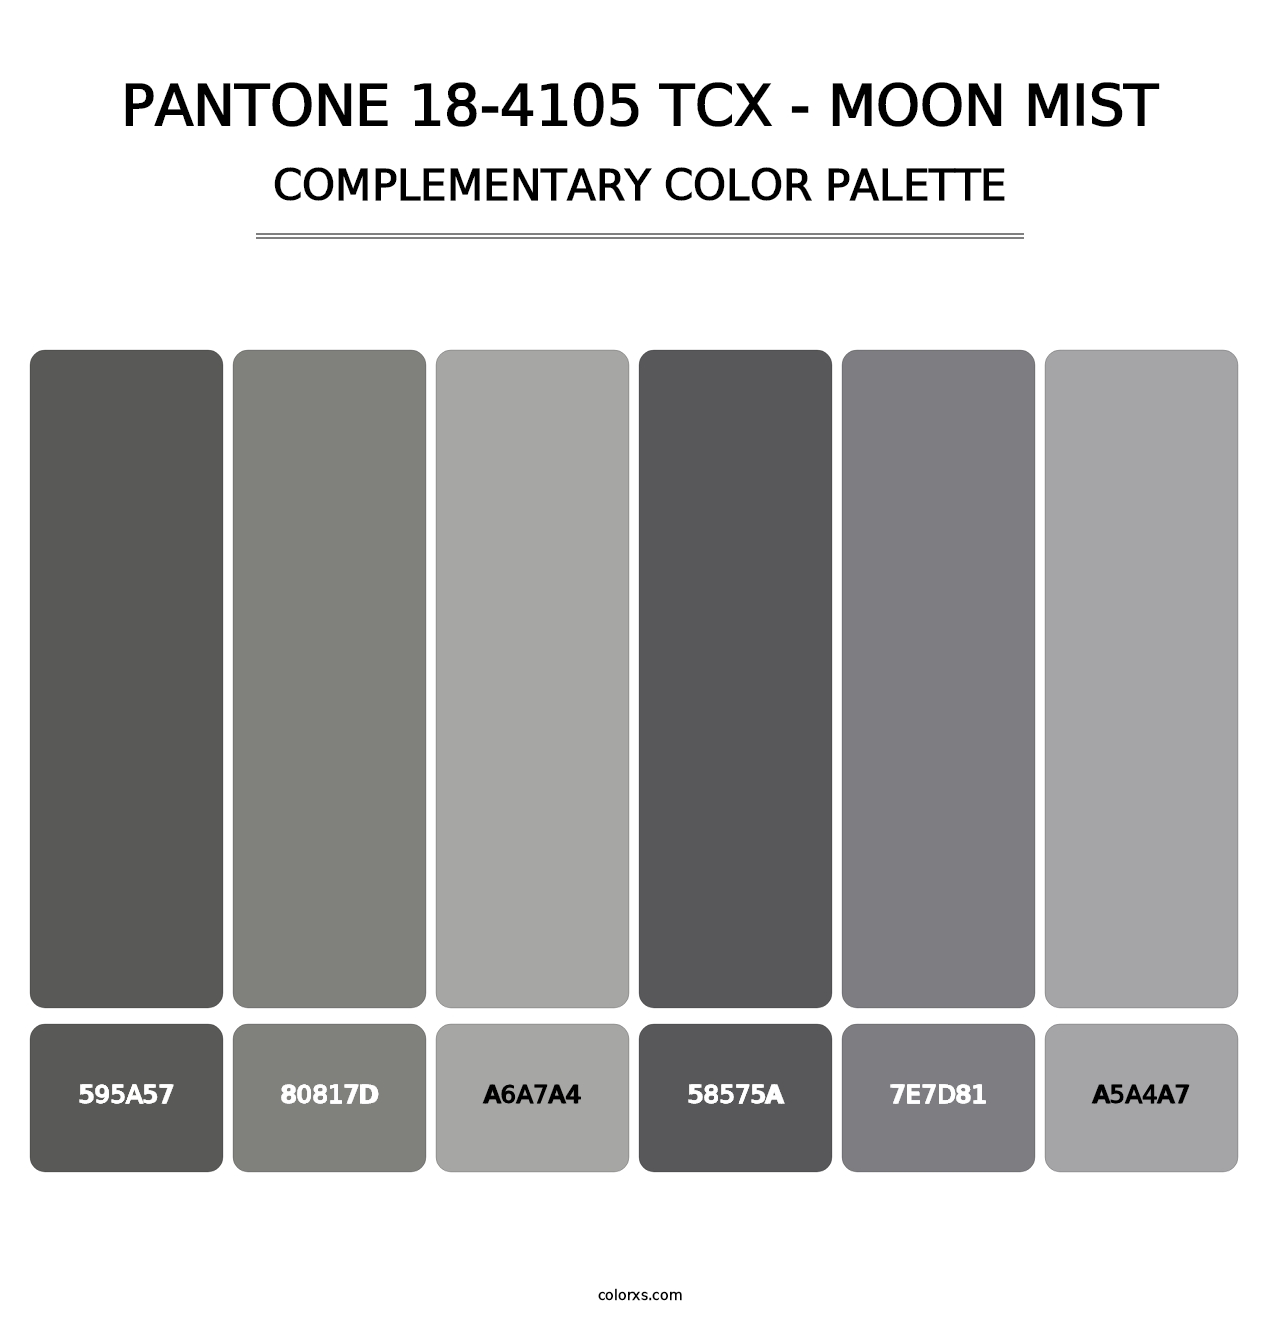 PANTONE 18-4105 TCX - Moon Mist - Complementary Color Palette